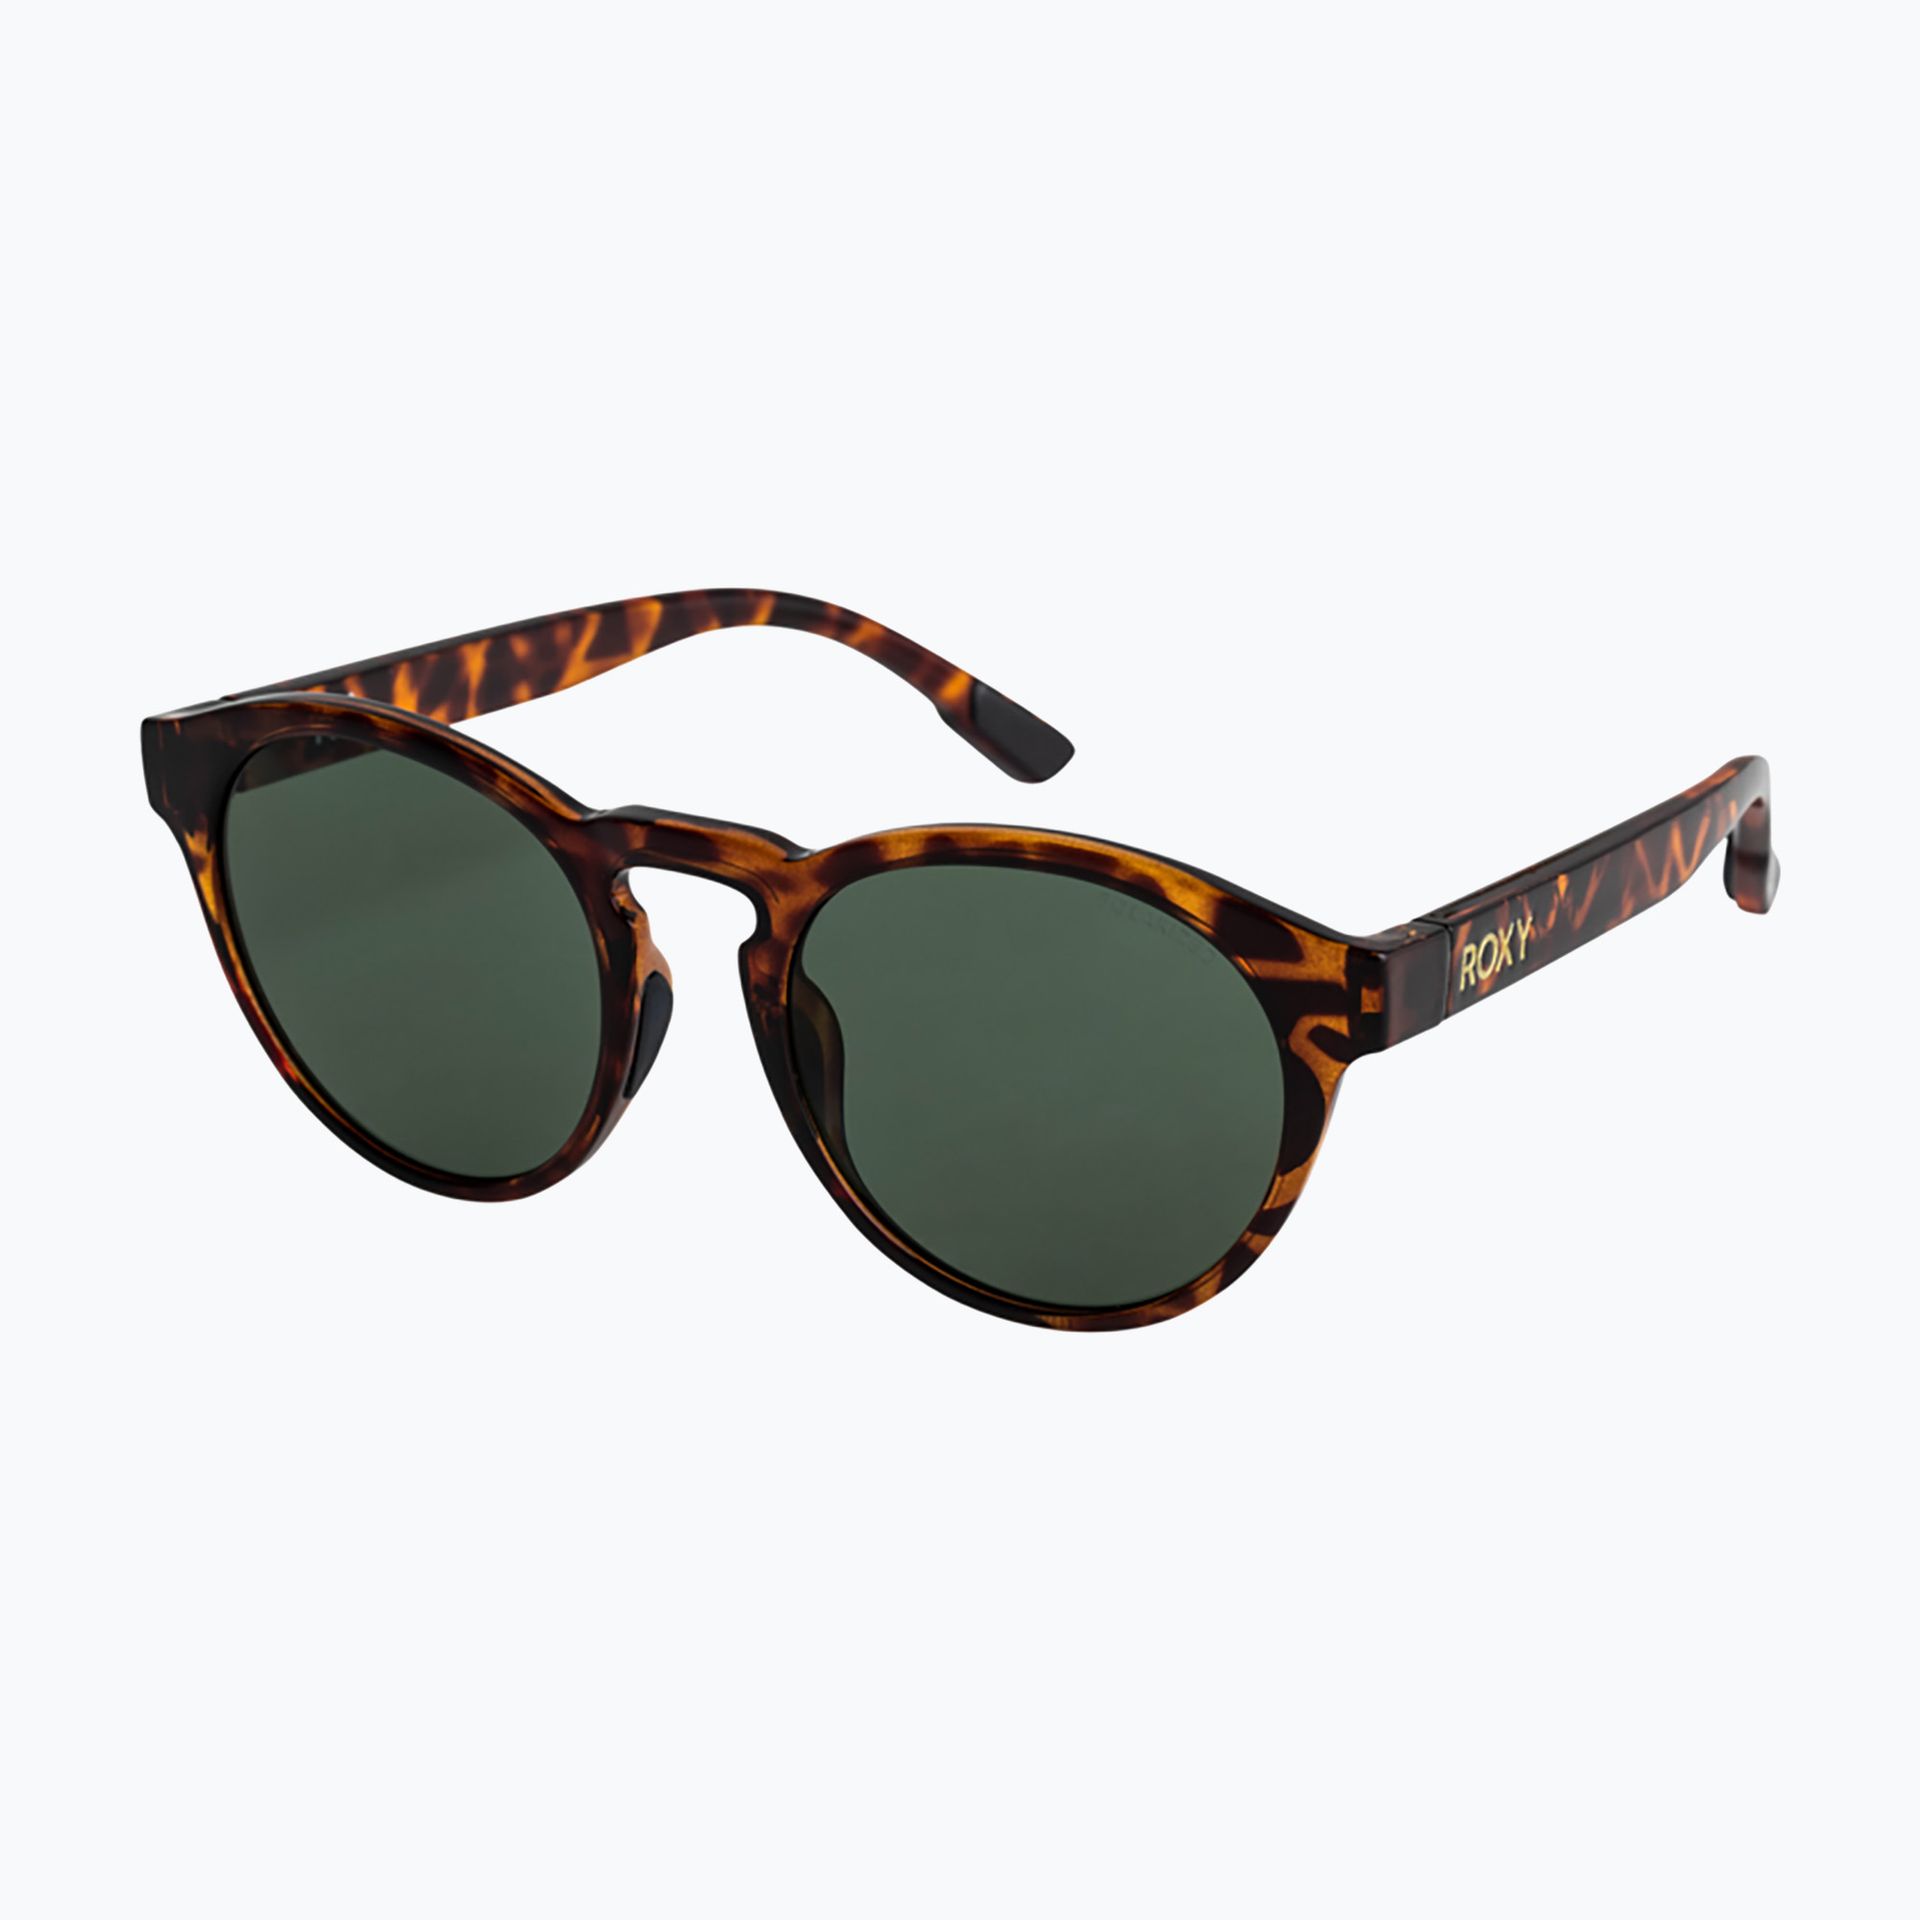 Okulary przeciwsłoneczne damskie ROXY Ivi Polarized tortoise brown/green | WYSYŁKA W 24H | 30 DNI NA ZWROT